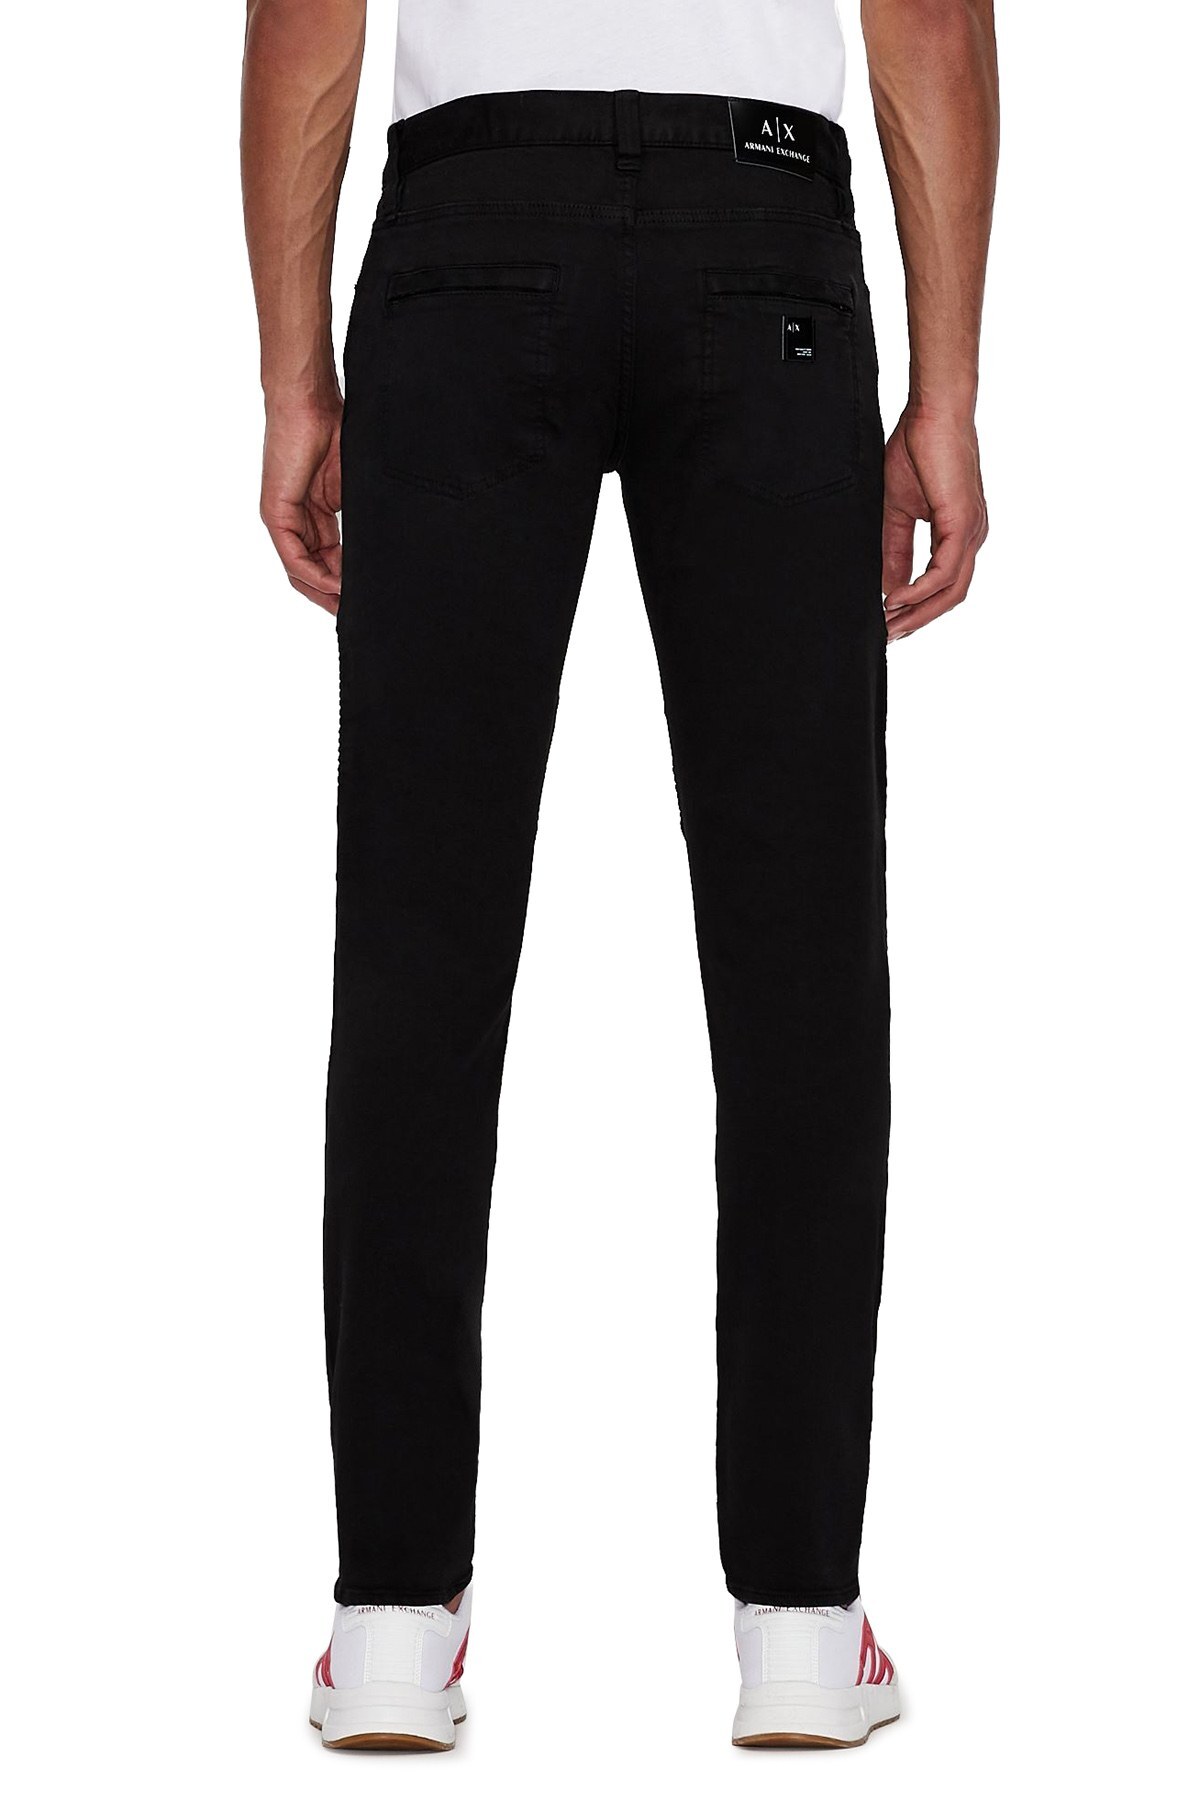 Armani Exchange Pamuklu Skinny Fit J27 Jeans Erkek Kot Pantolon 3KZJ27 Z1ESZ 1200 SİYAH